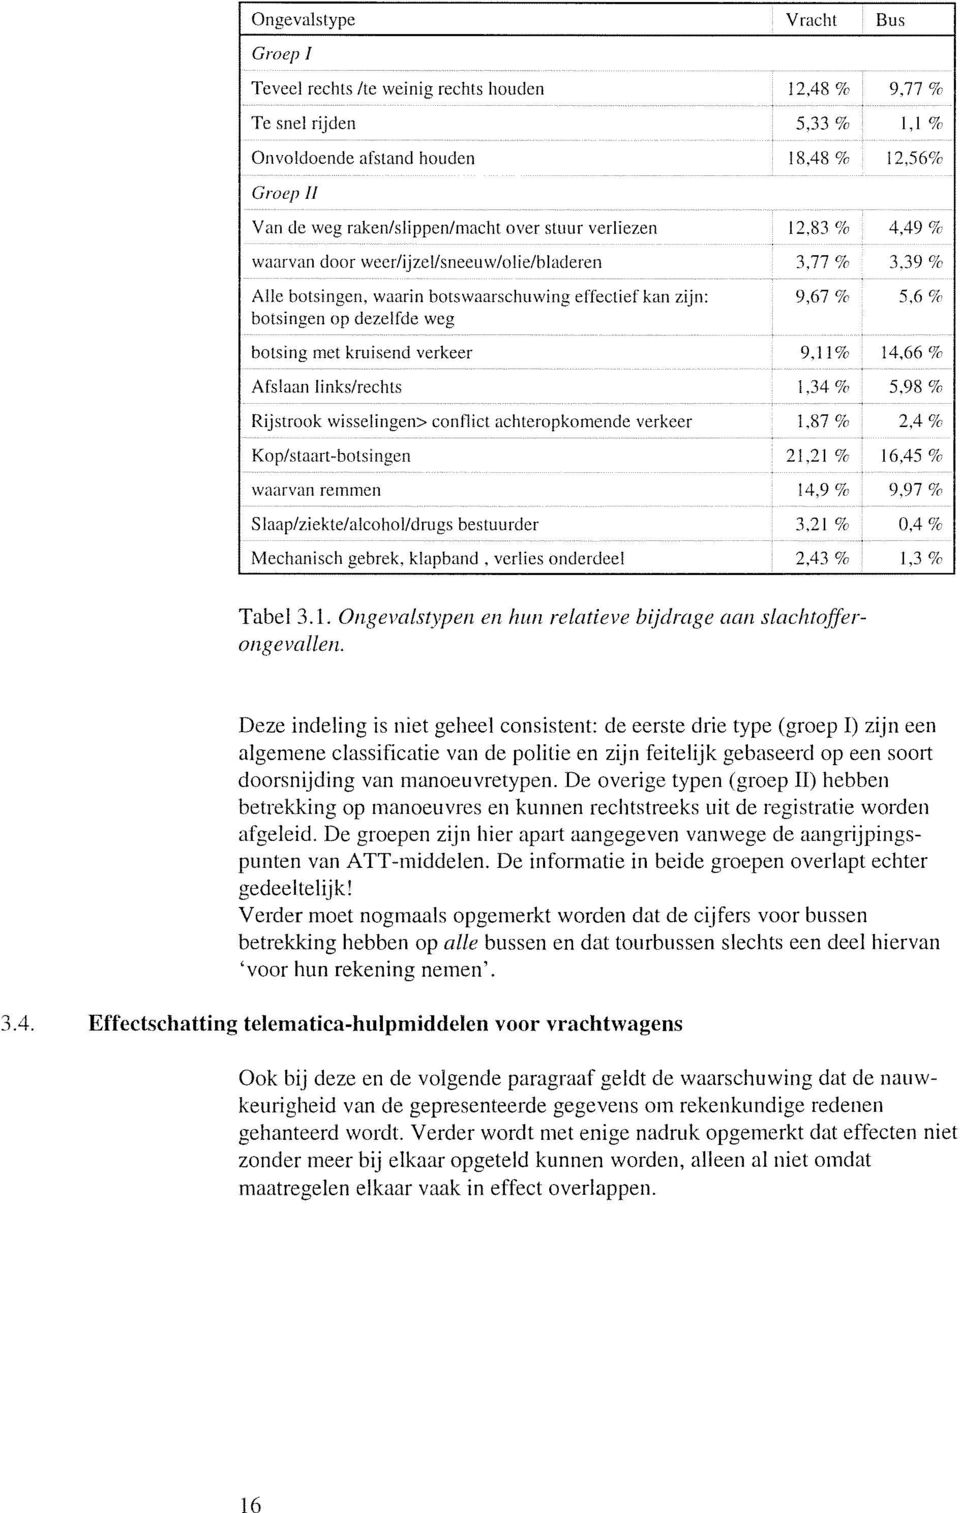 conflict achteropkomende verkeer Kop/staart-botsingen waarvan remmen Slaaplziekte/alcohol/drugs bestuurder Mechanisch gebrek, klapband, verlies onderdeel Vracht 12,48 % 5,33 % 18,48 % 12.83 'la 3.